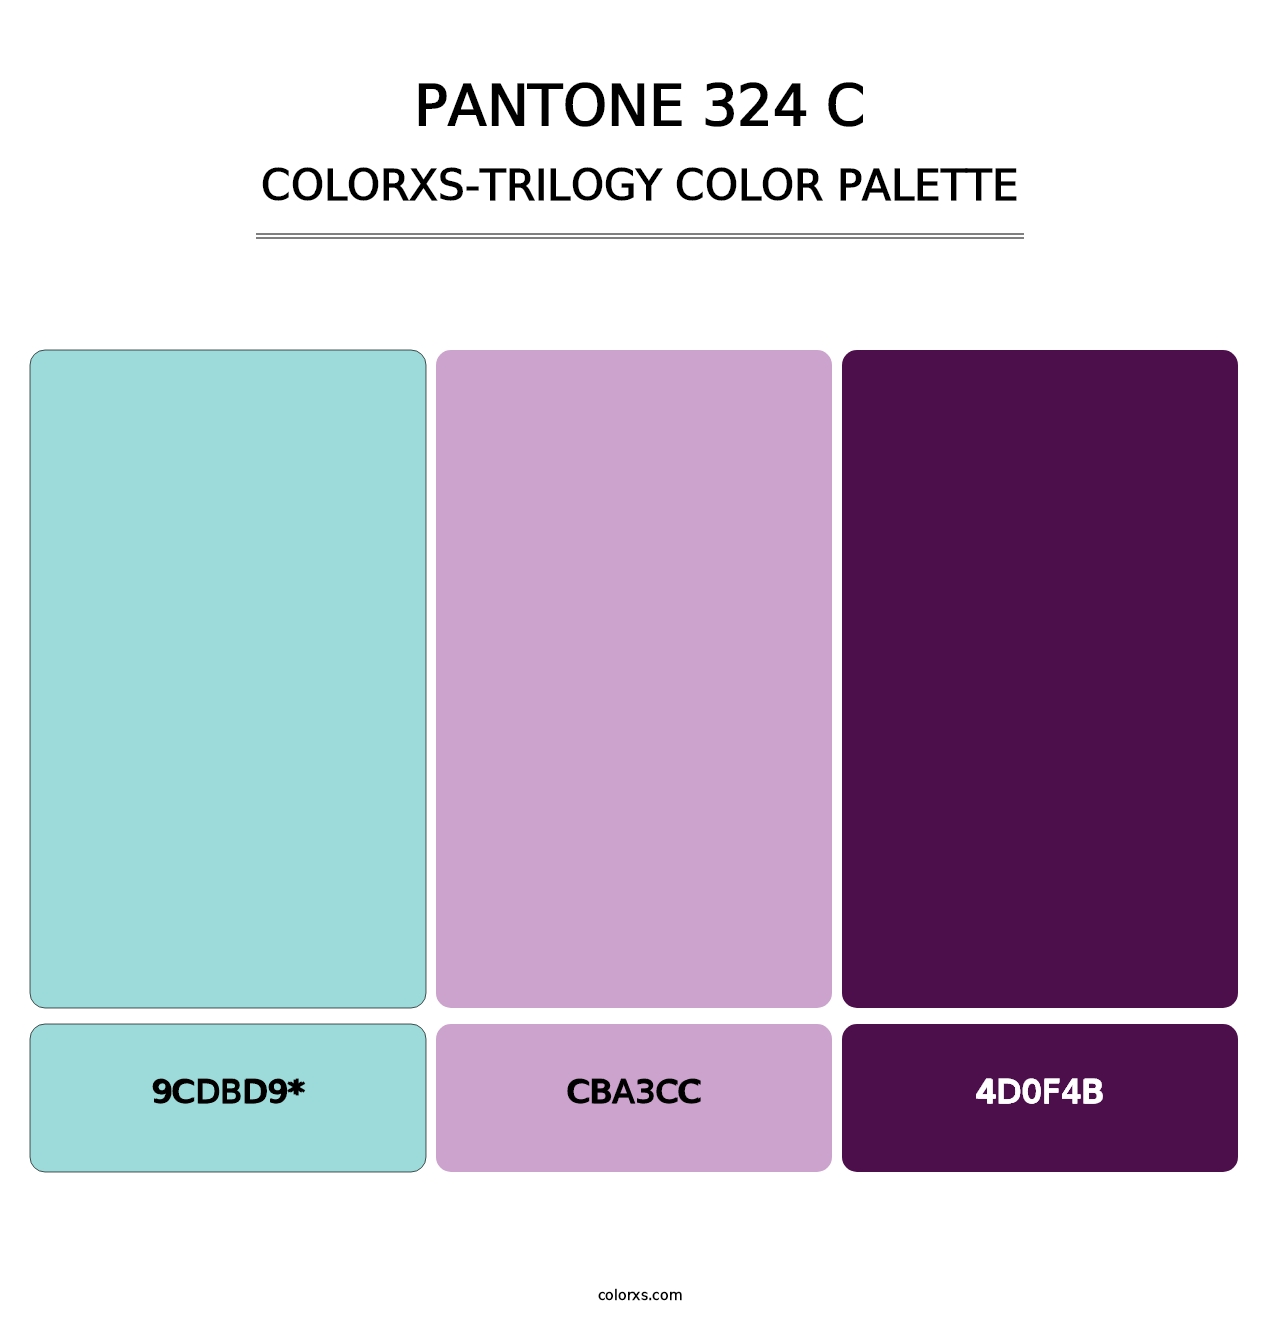 PANTONE 324 C - Colorxs Trilogy Palette